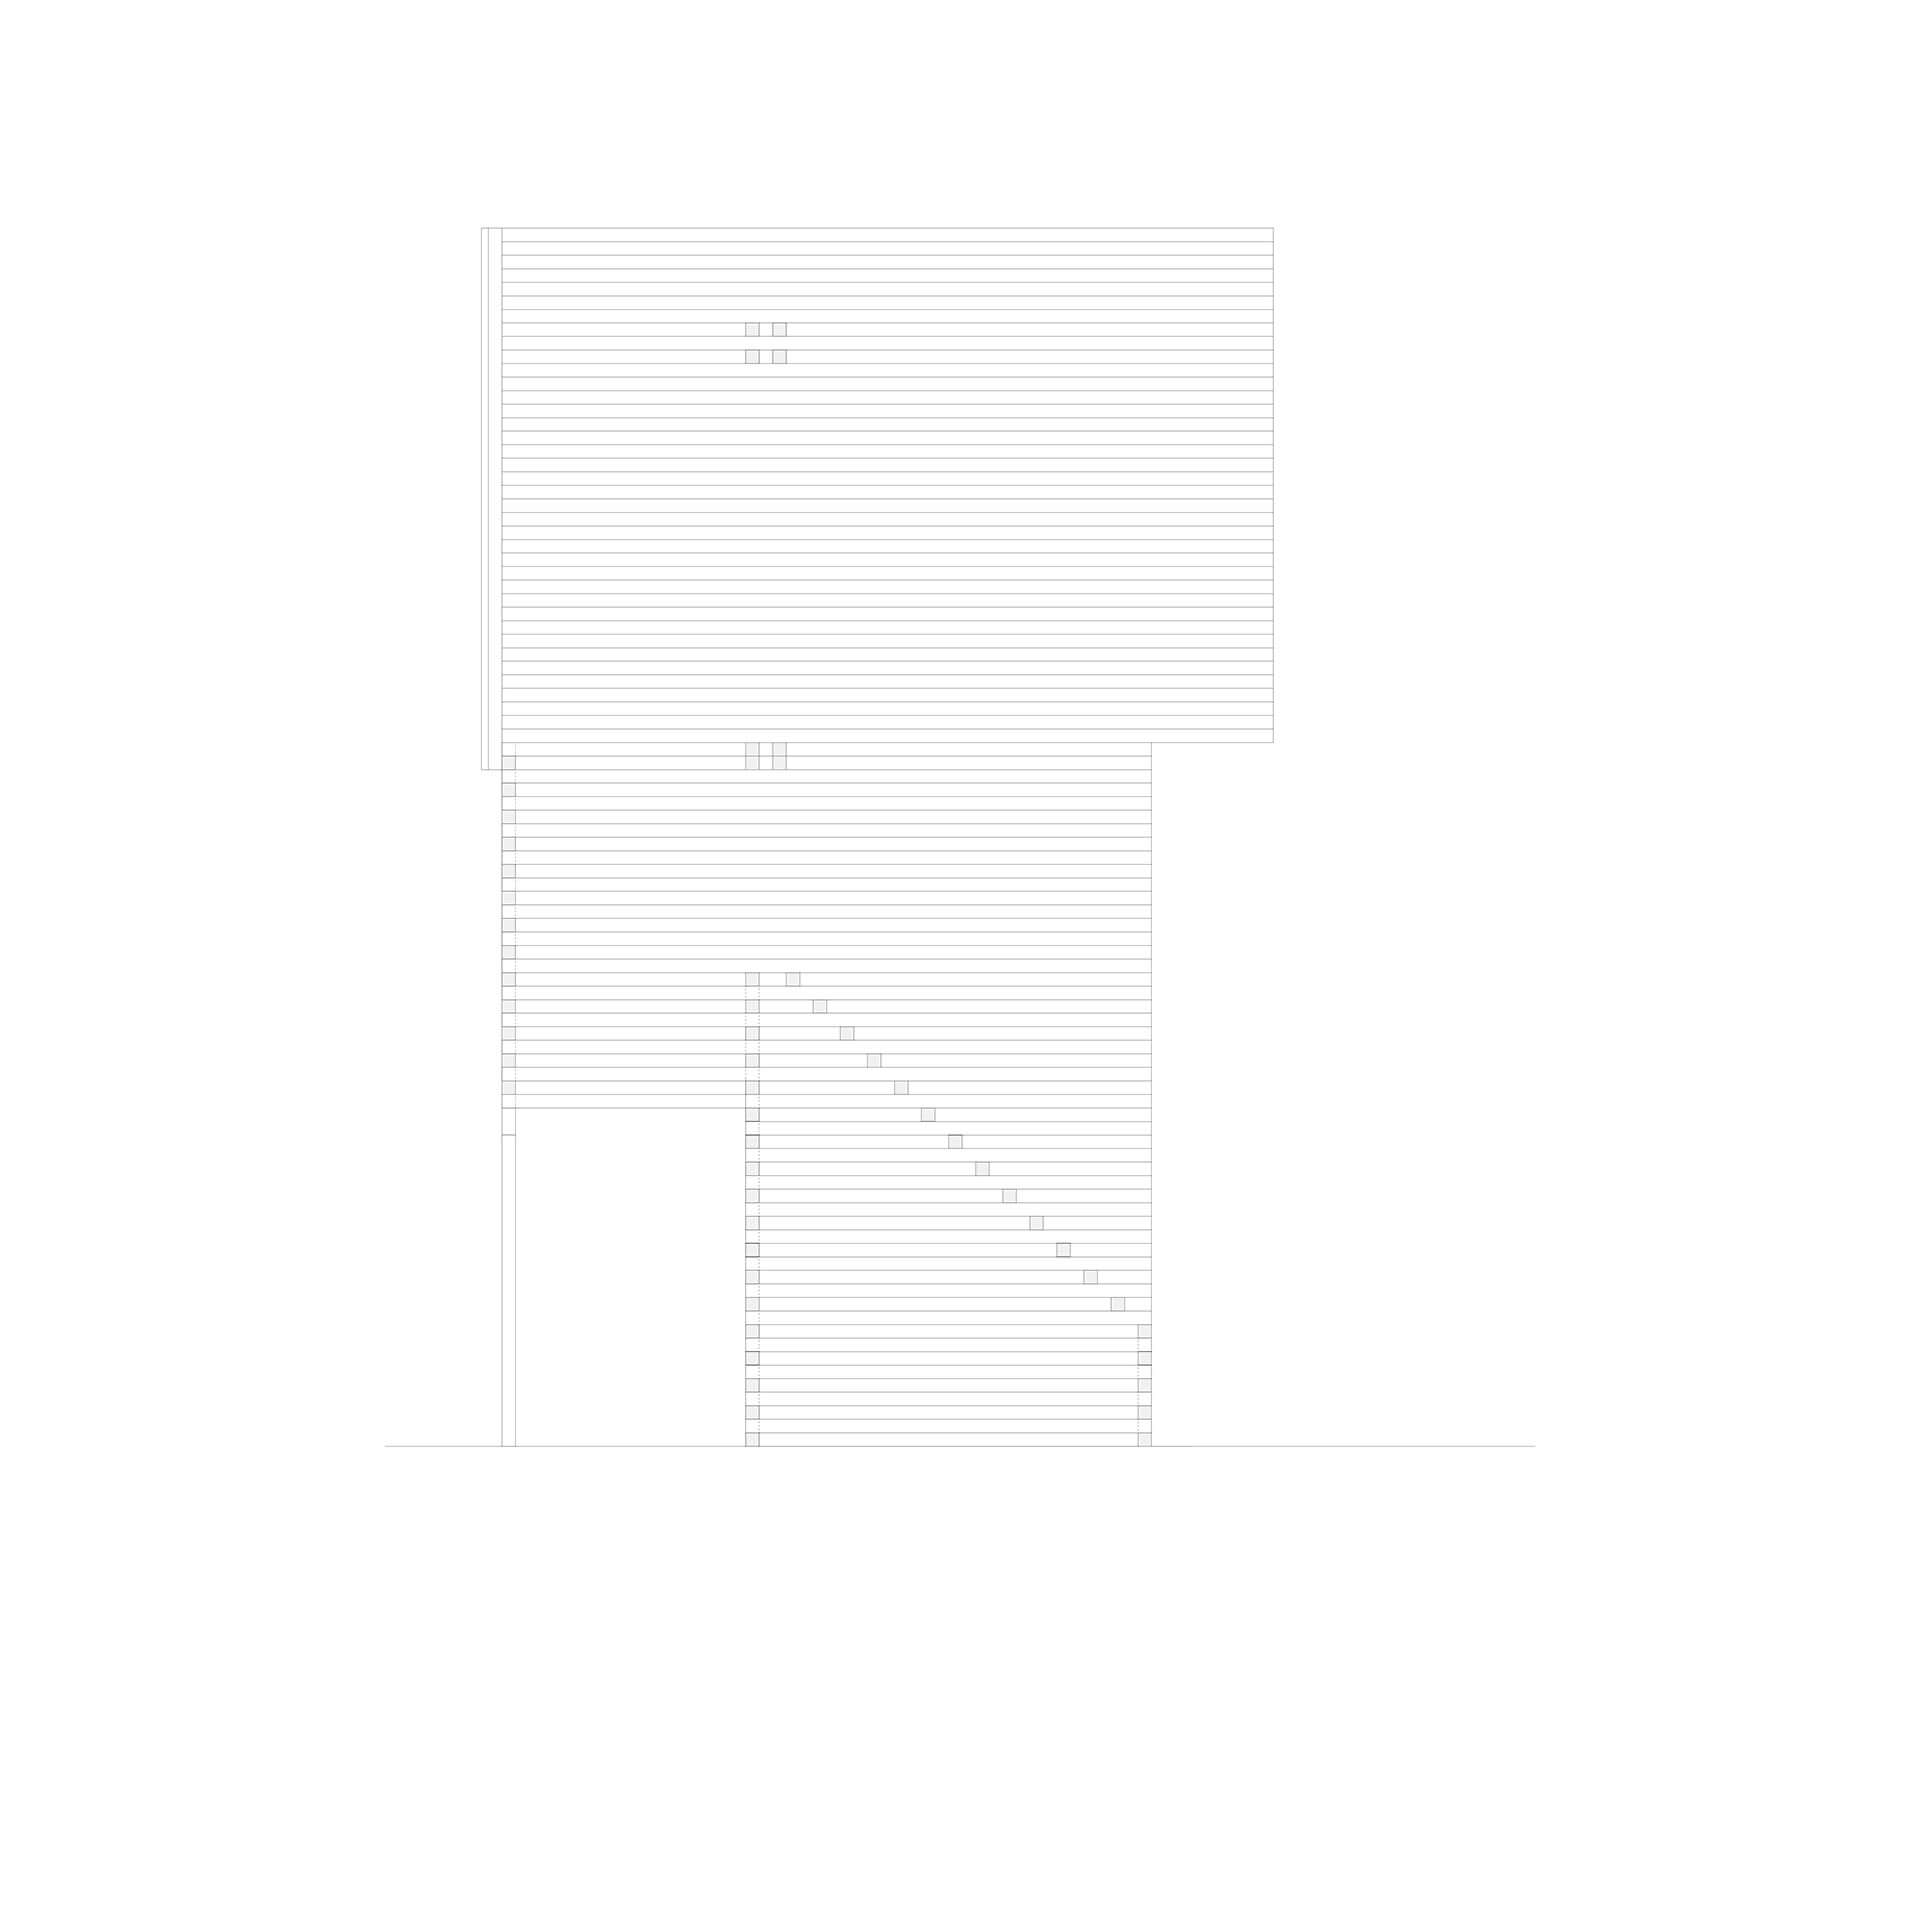 Steve Larkin Architects - Venice 4. Side Elevation